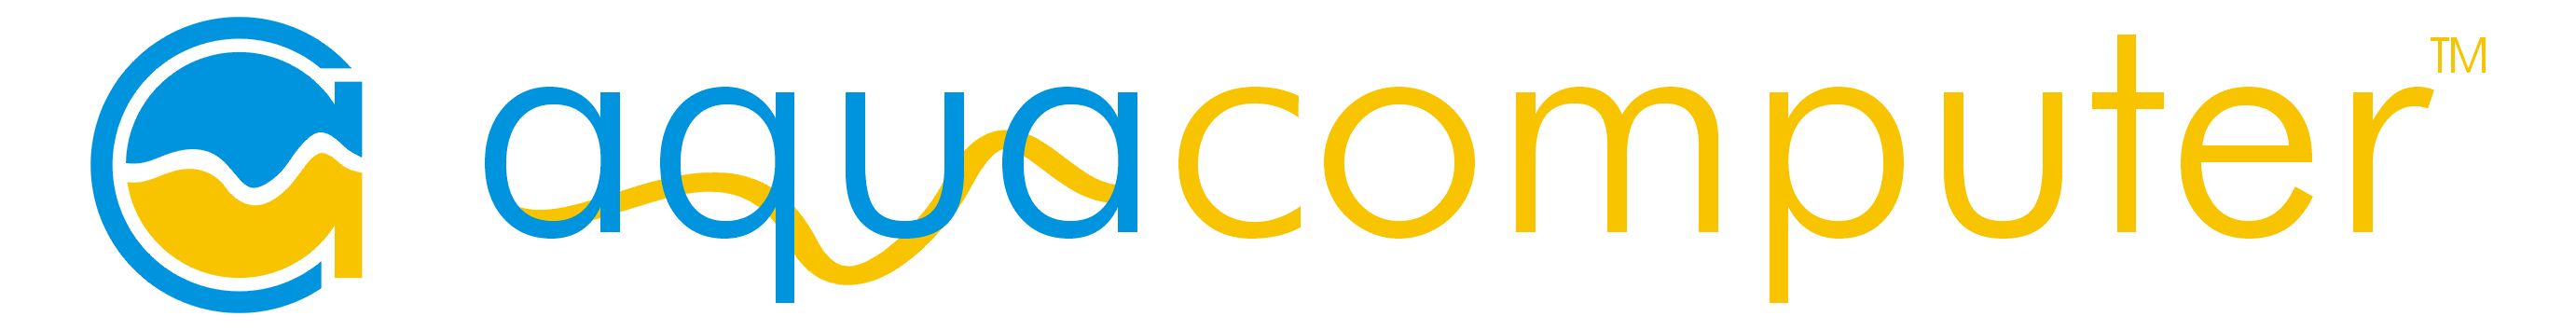 Aquacomputer logo